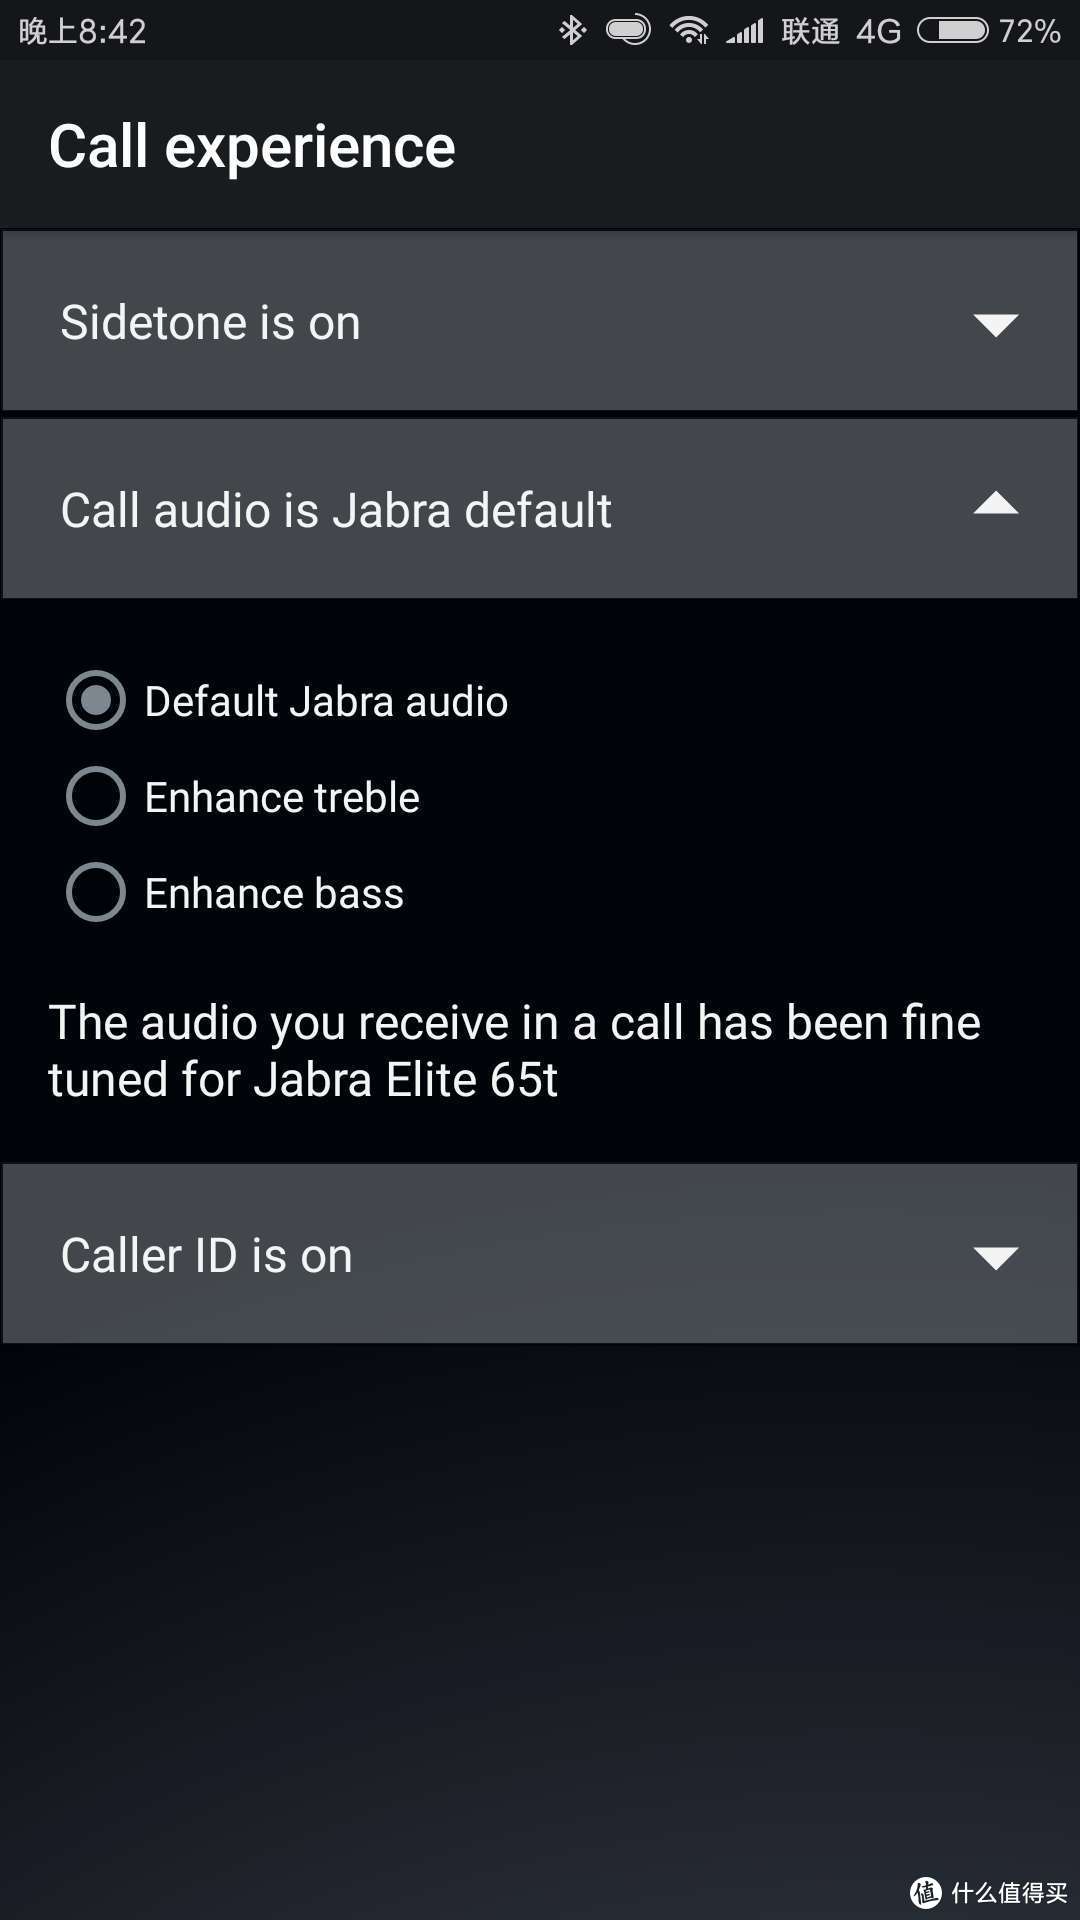 易用又好听——Jabra Elite 65t 捷波朗 臻律 无线蓝牙音乐耳机体验报告